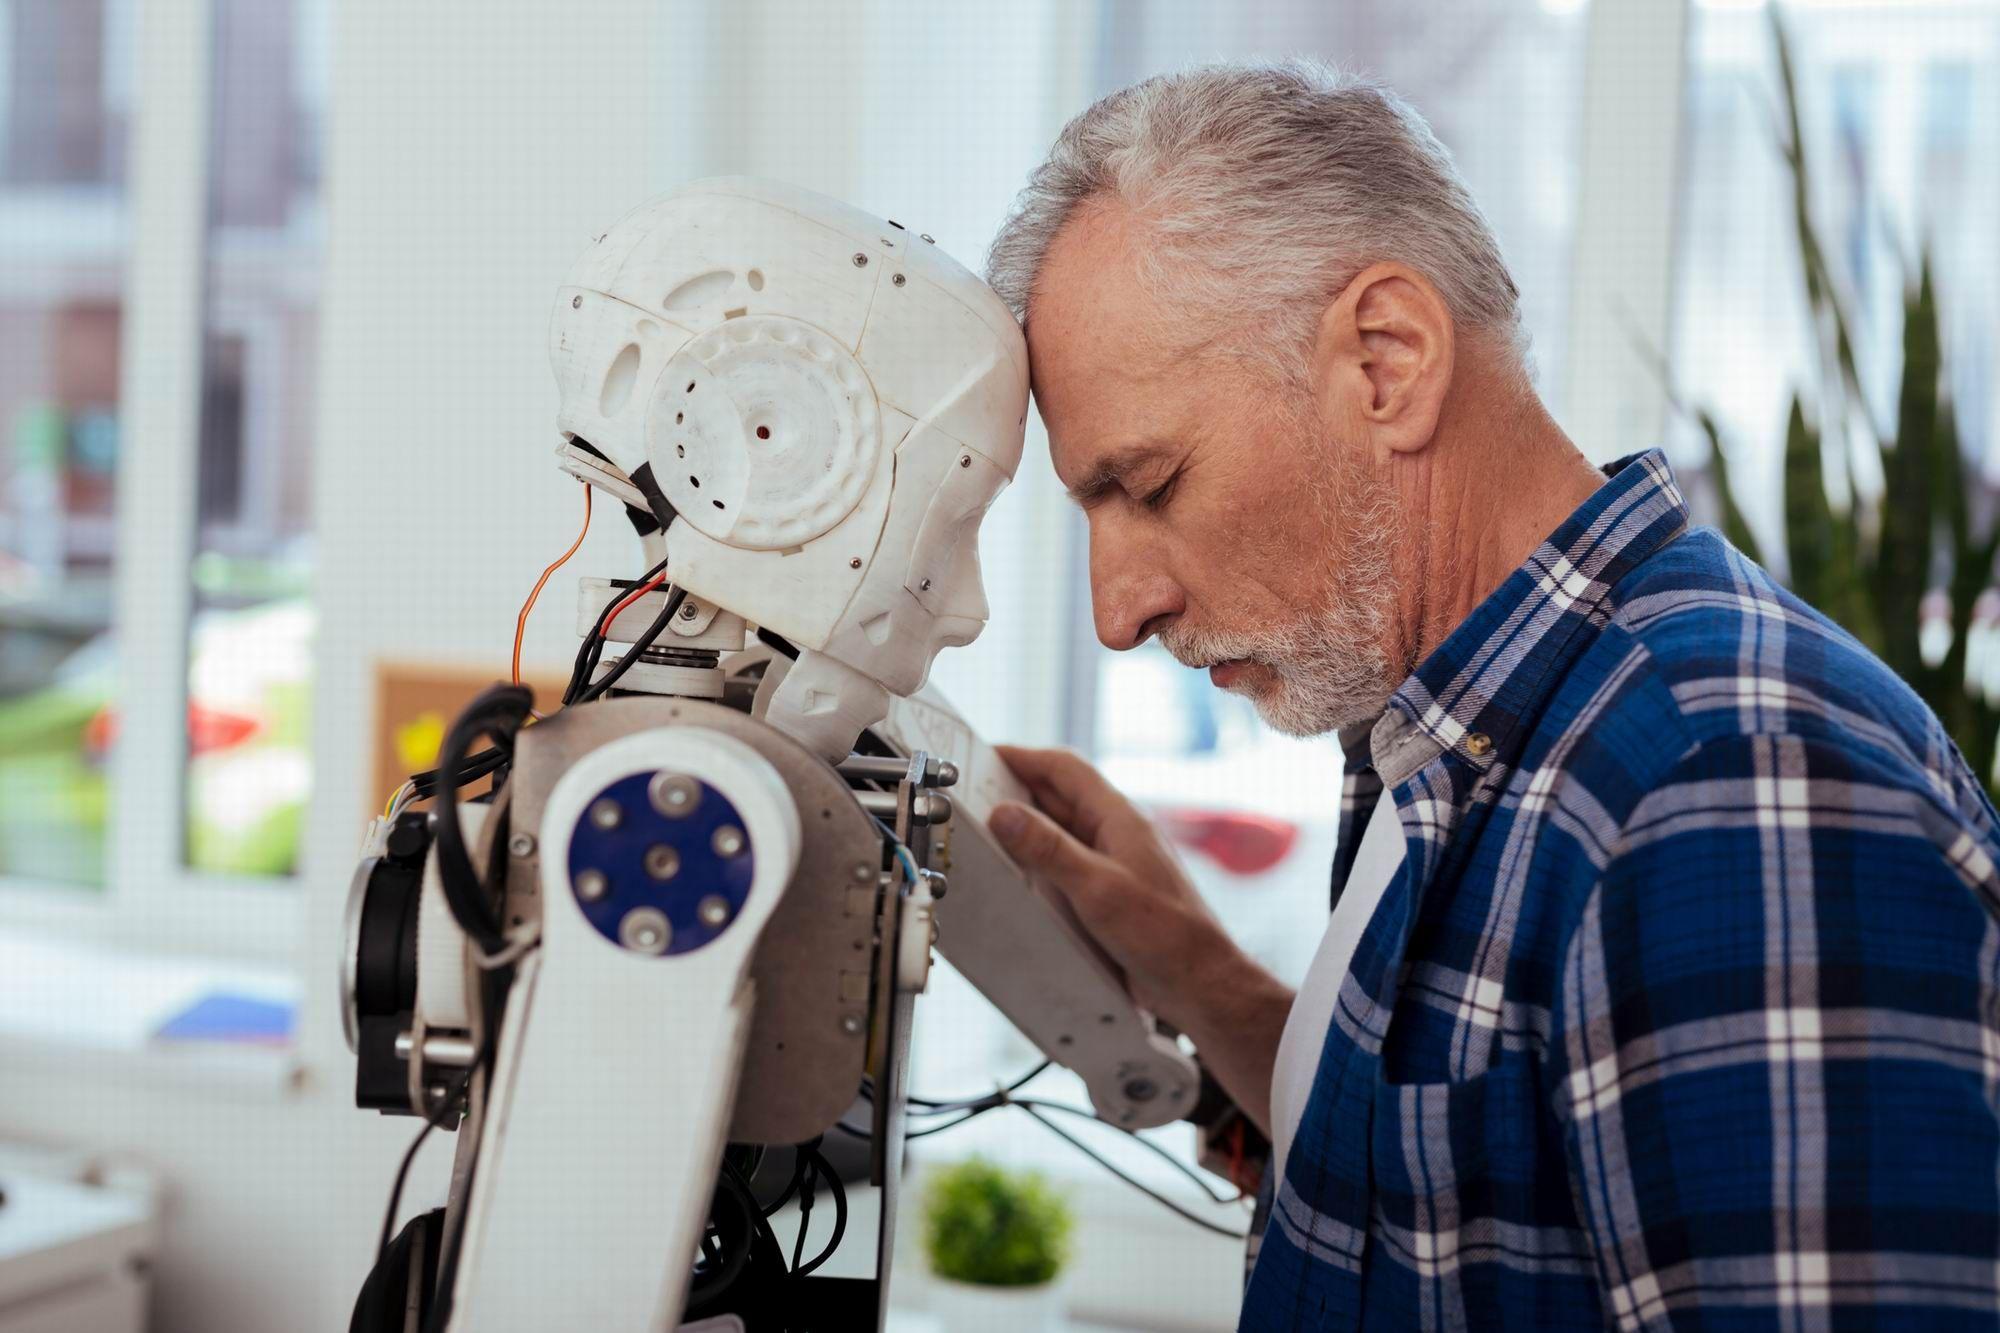 Roboții sociali vor avea un rol tot mai mare în îngrijirea seniorilor, ne spun experții. Foto:  Dmytro Zinkevych / Dreamstime.com